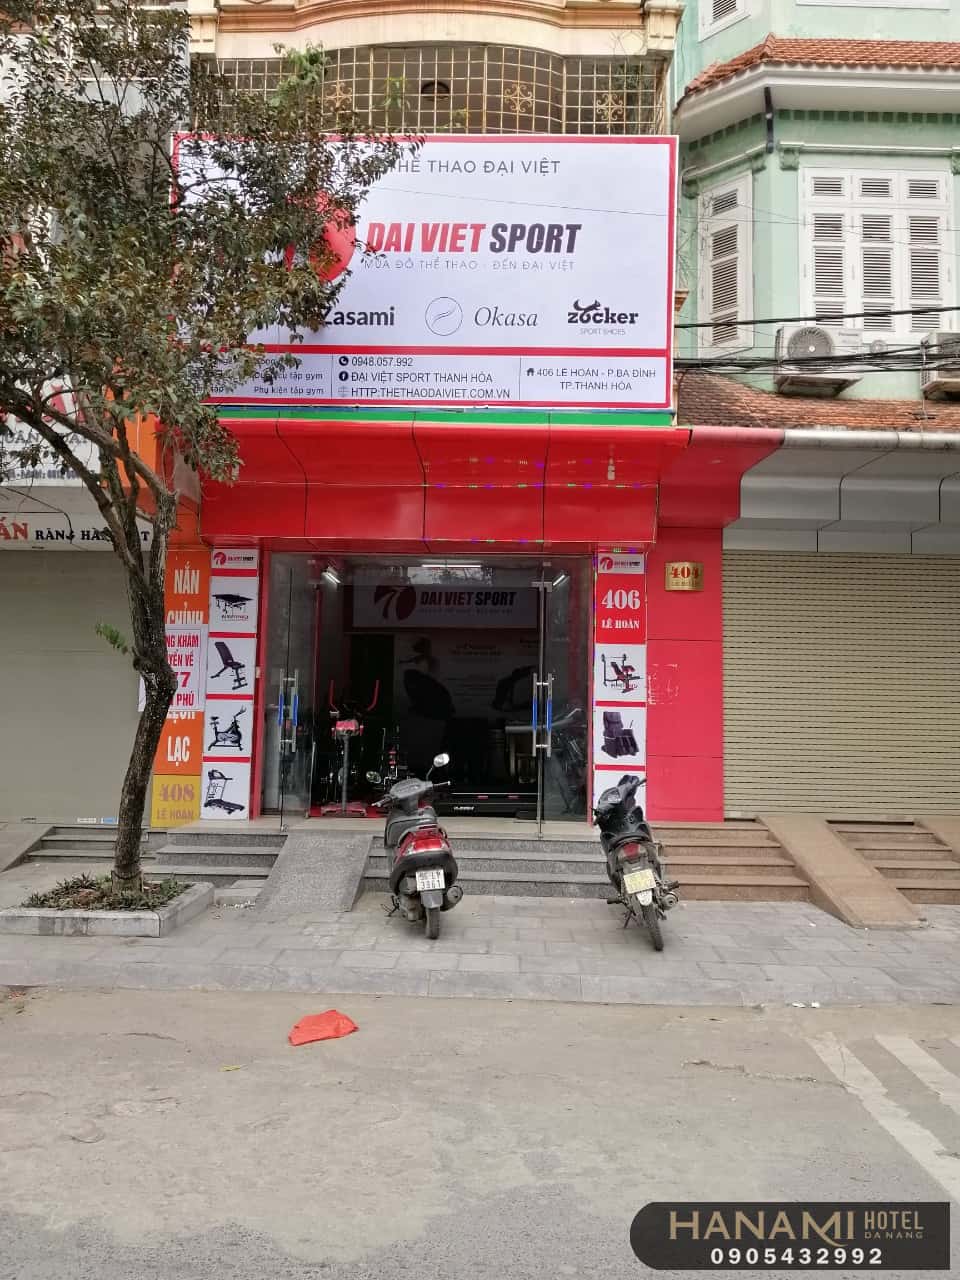 cửa hàng bán dụng cụ thể thao Đà Nẵng